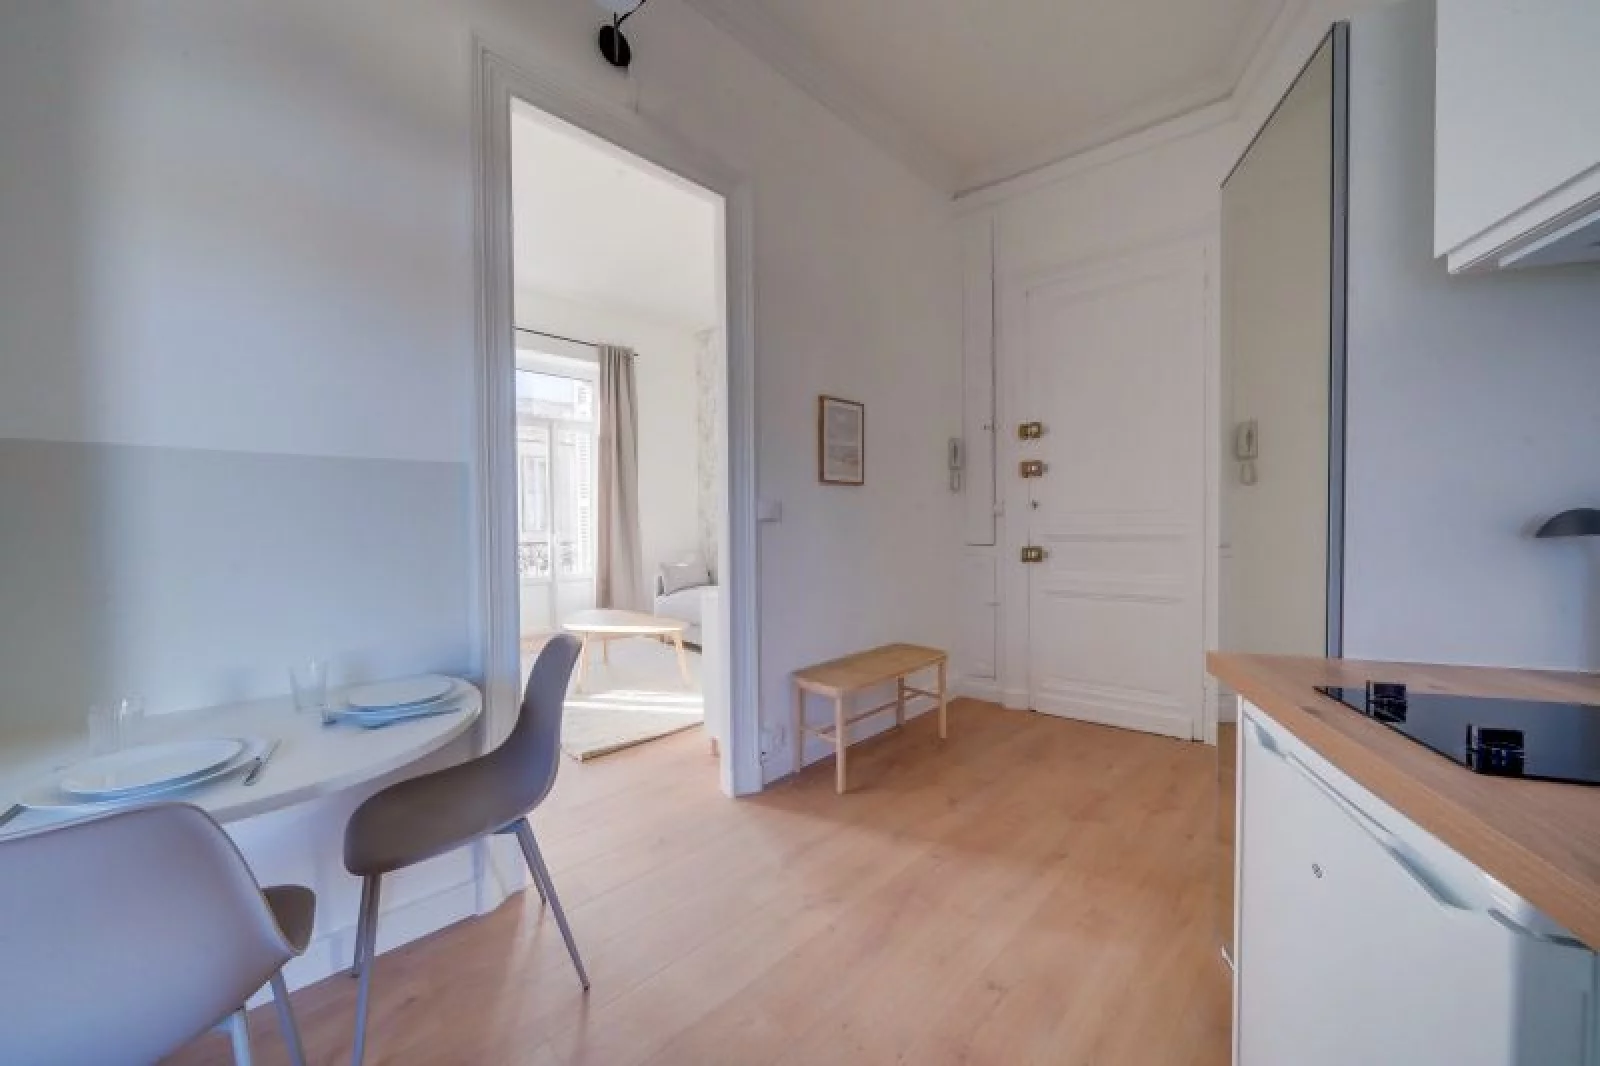 Location appartement meublé 1 pièce 29m² (Bordeaux sud/ Victoire - St Jean)